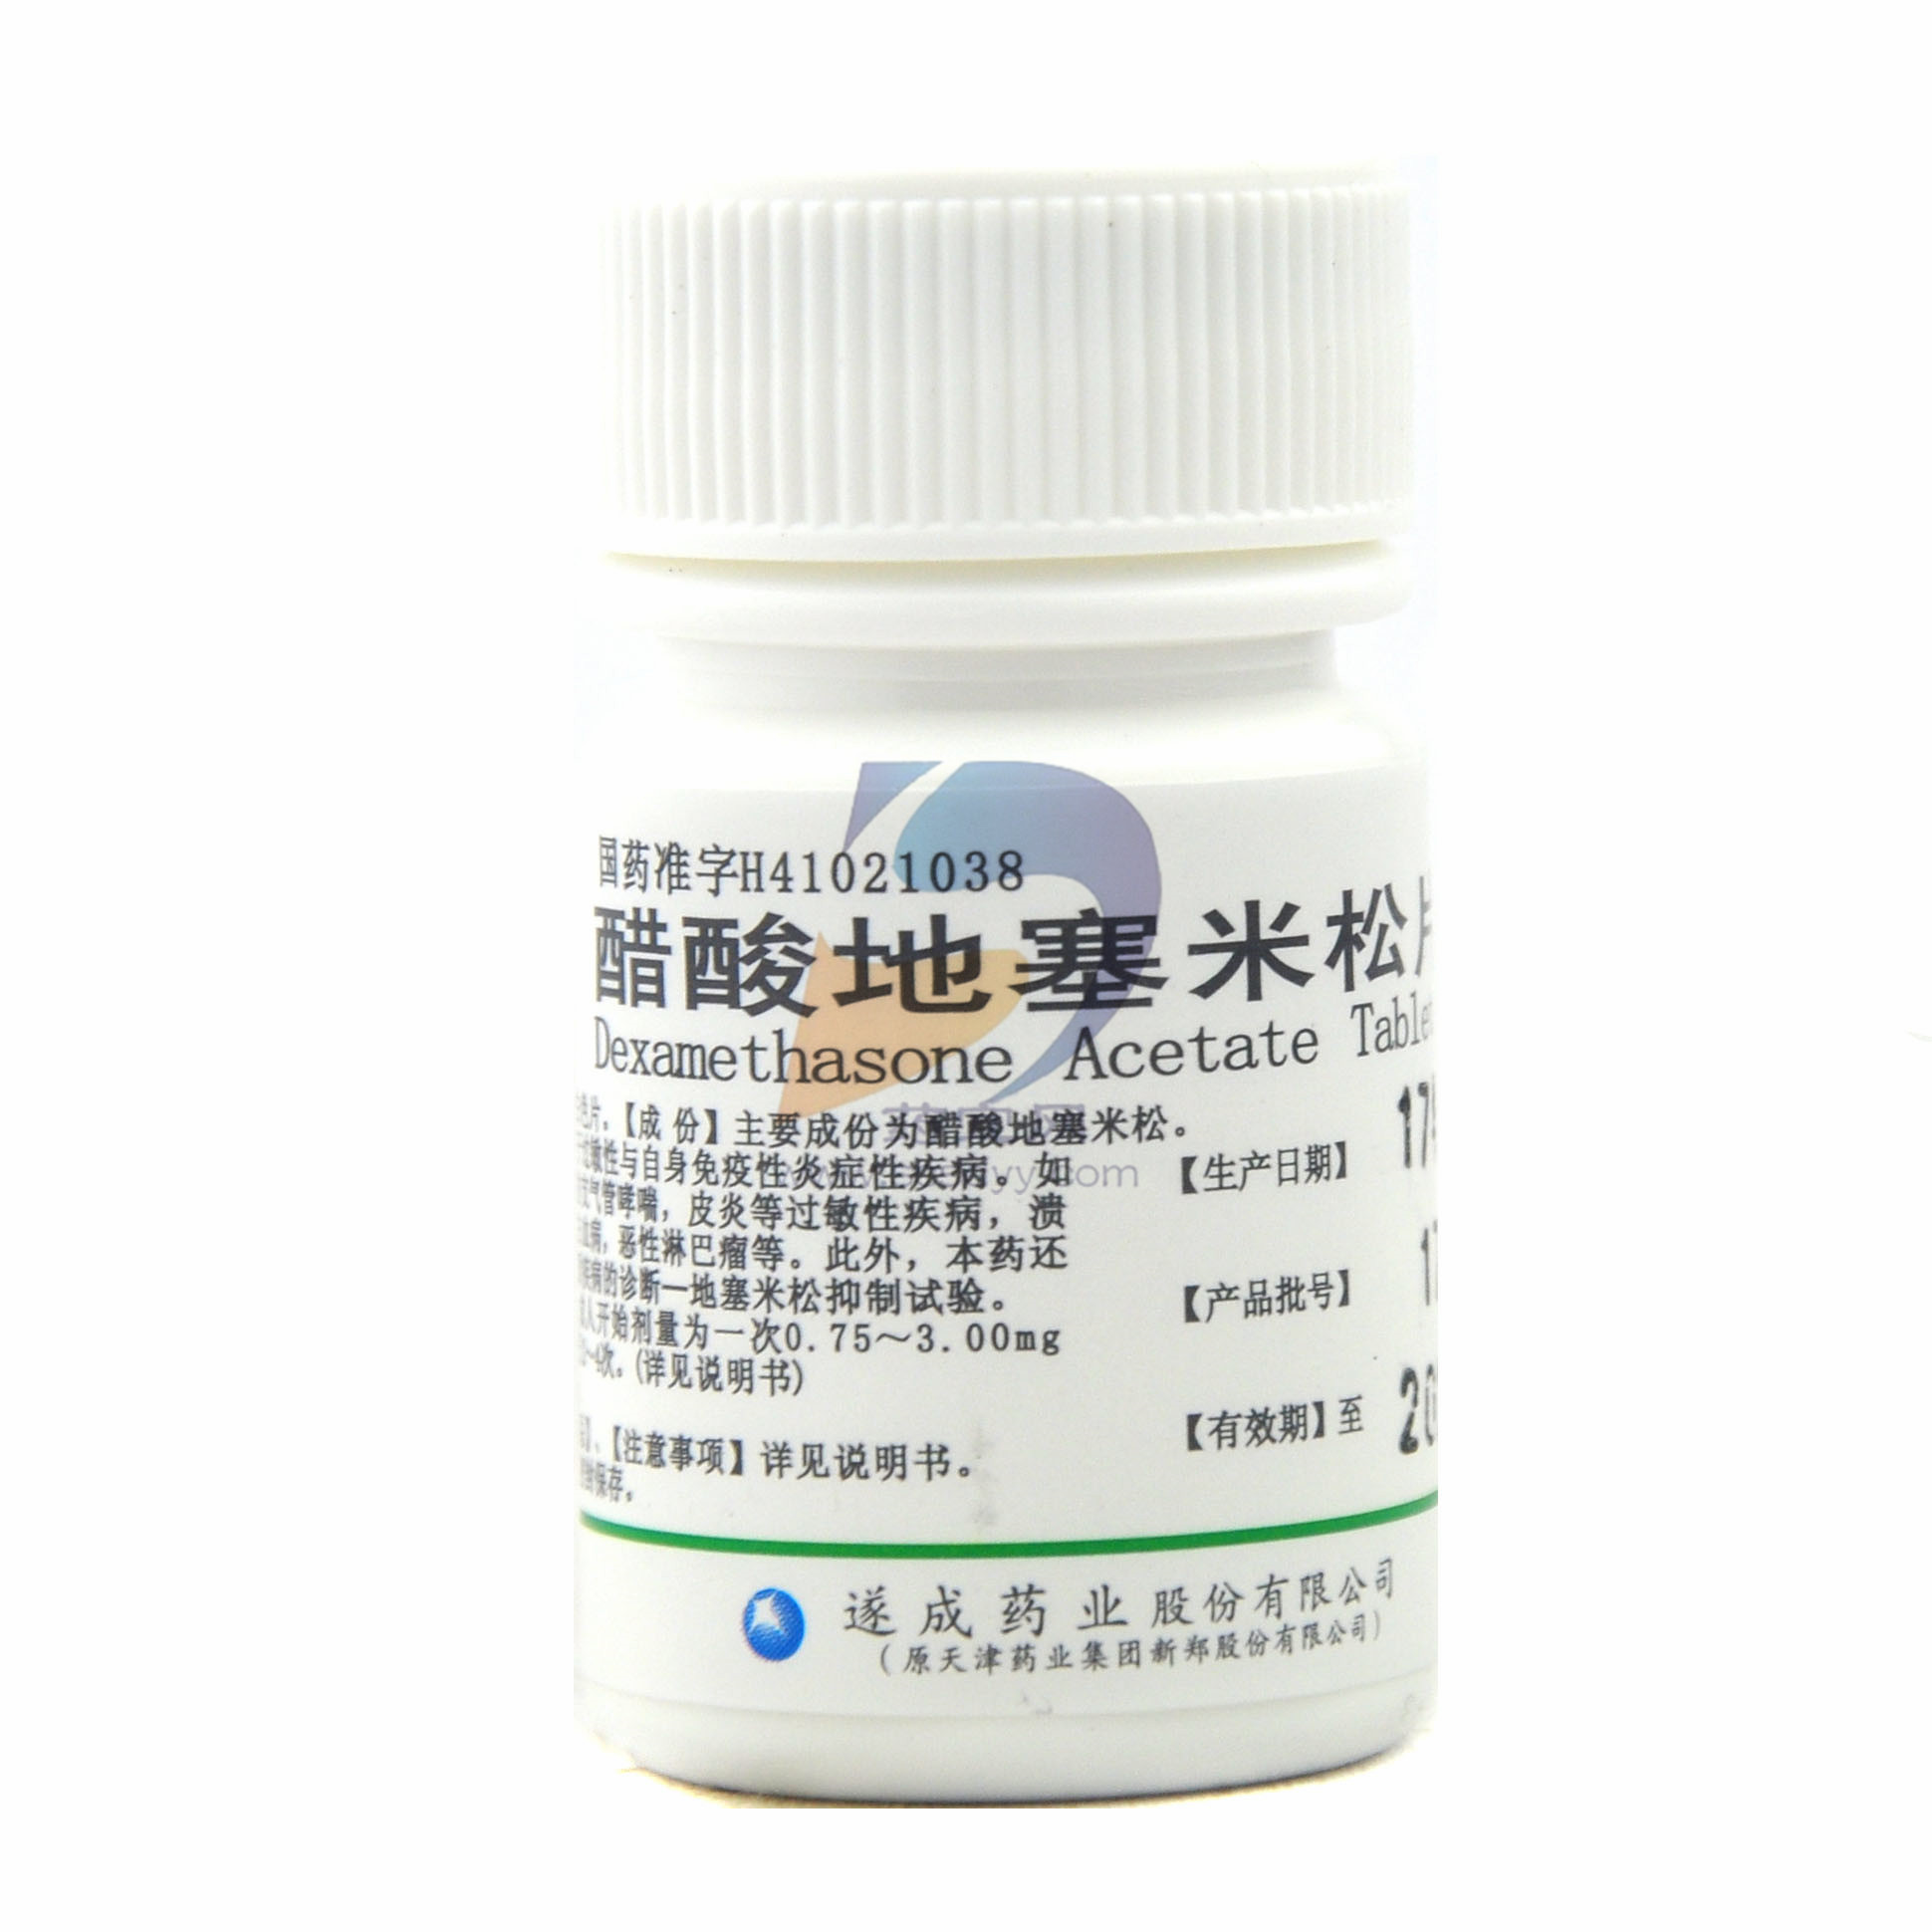 地塞米松磷酸钠注射液(5ml:5mg)